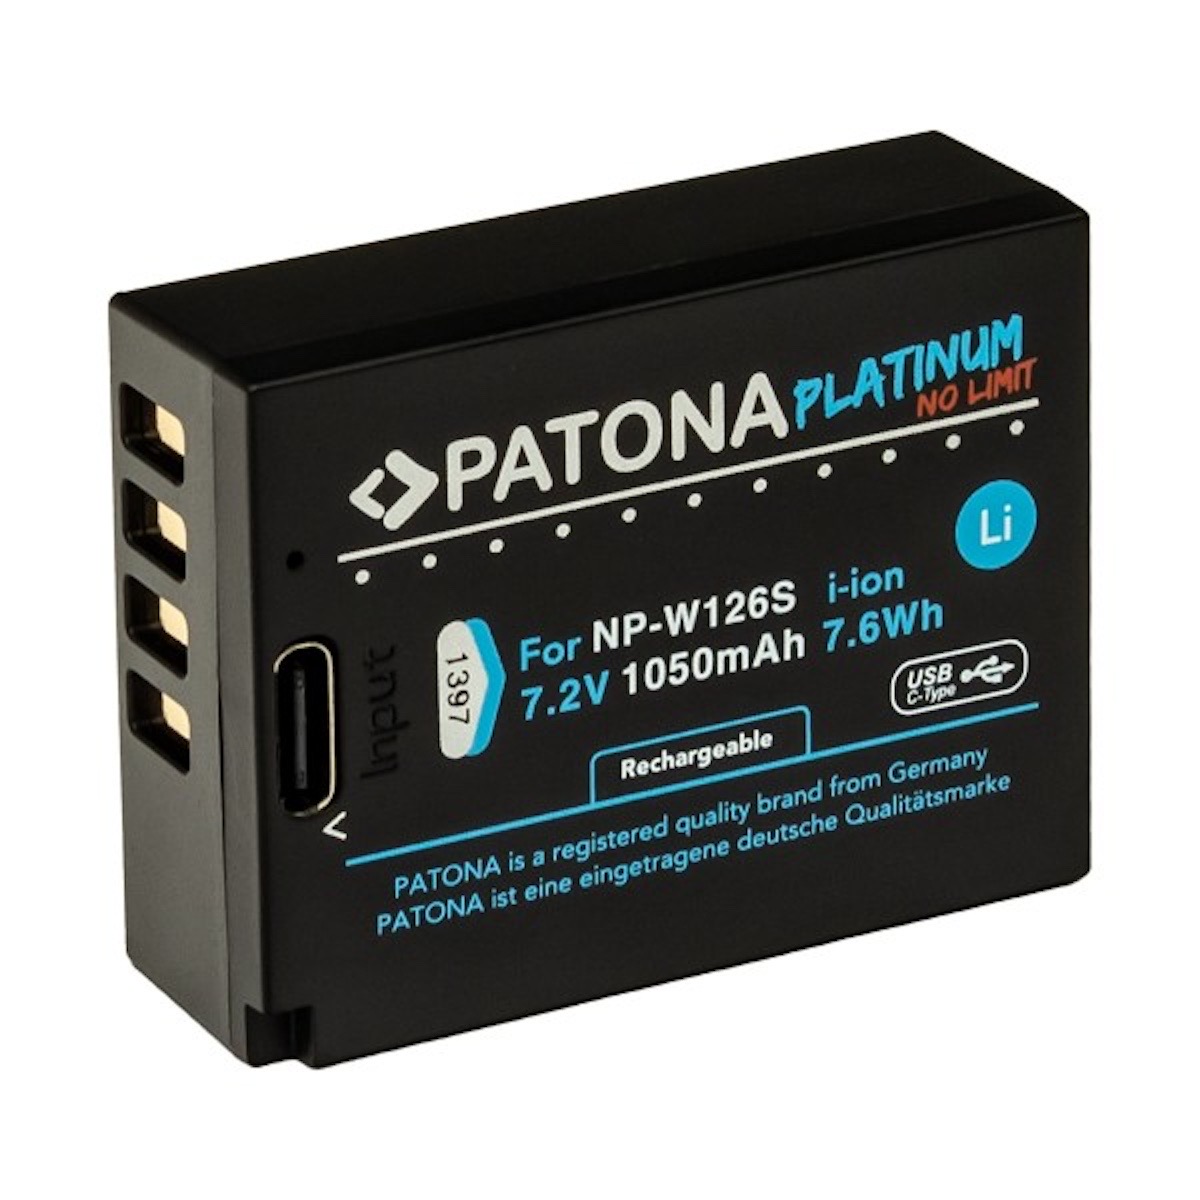 Patona Platinum Akku mit USB-C Input f. Fuji NP-W126S